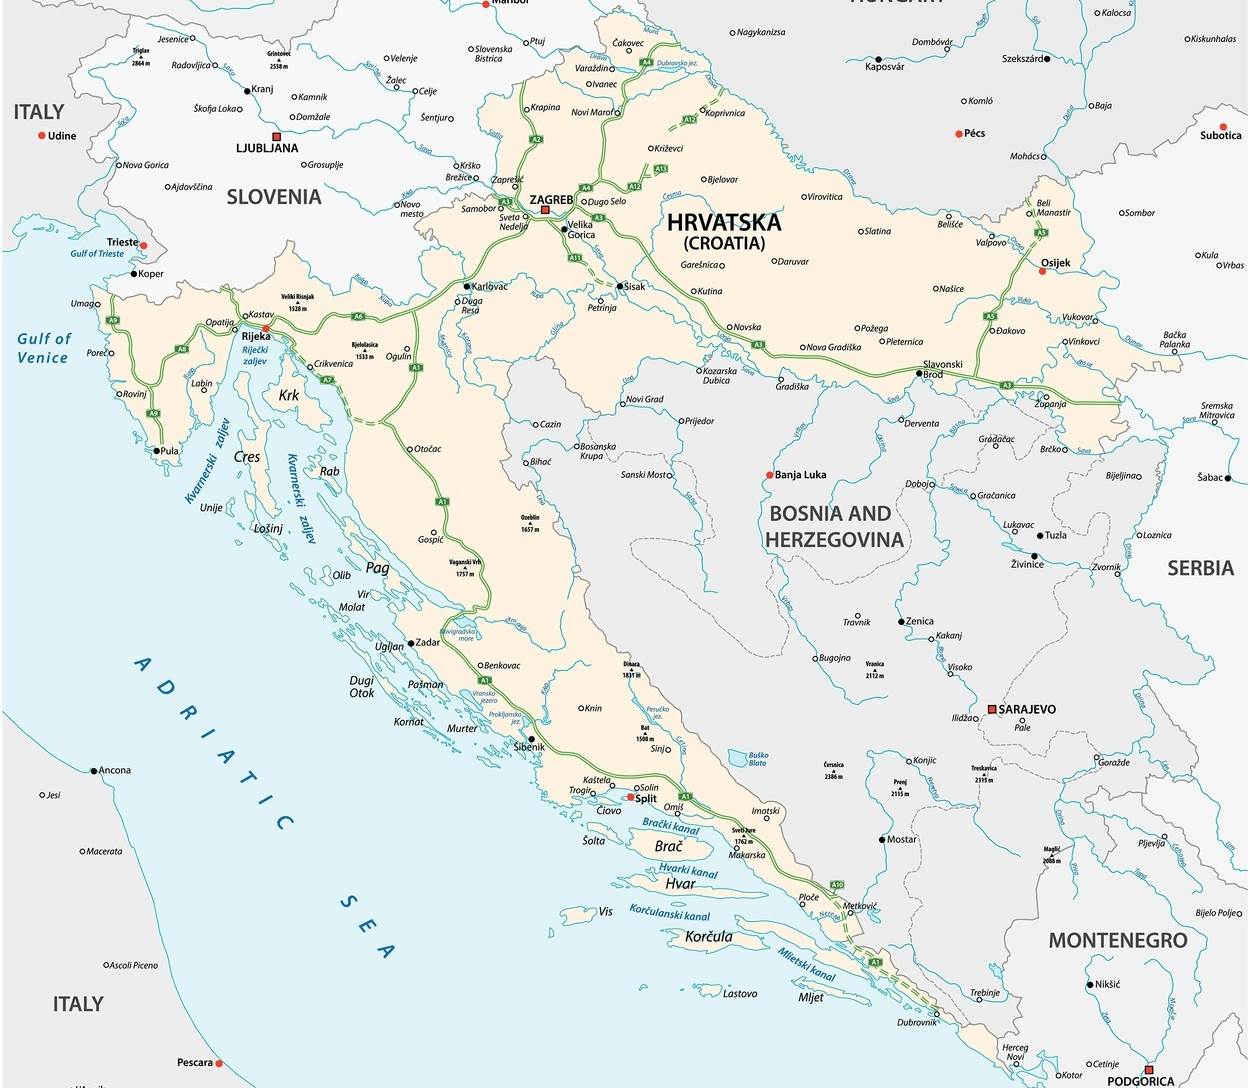  Hrvatska mapa.jpg 